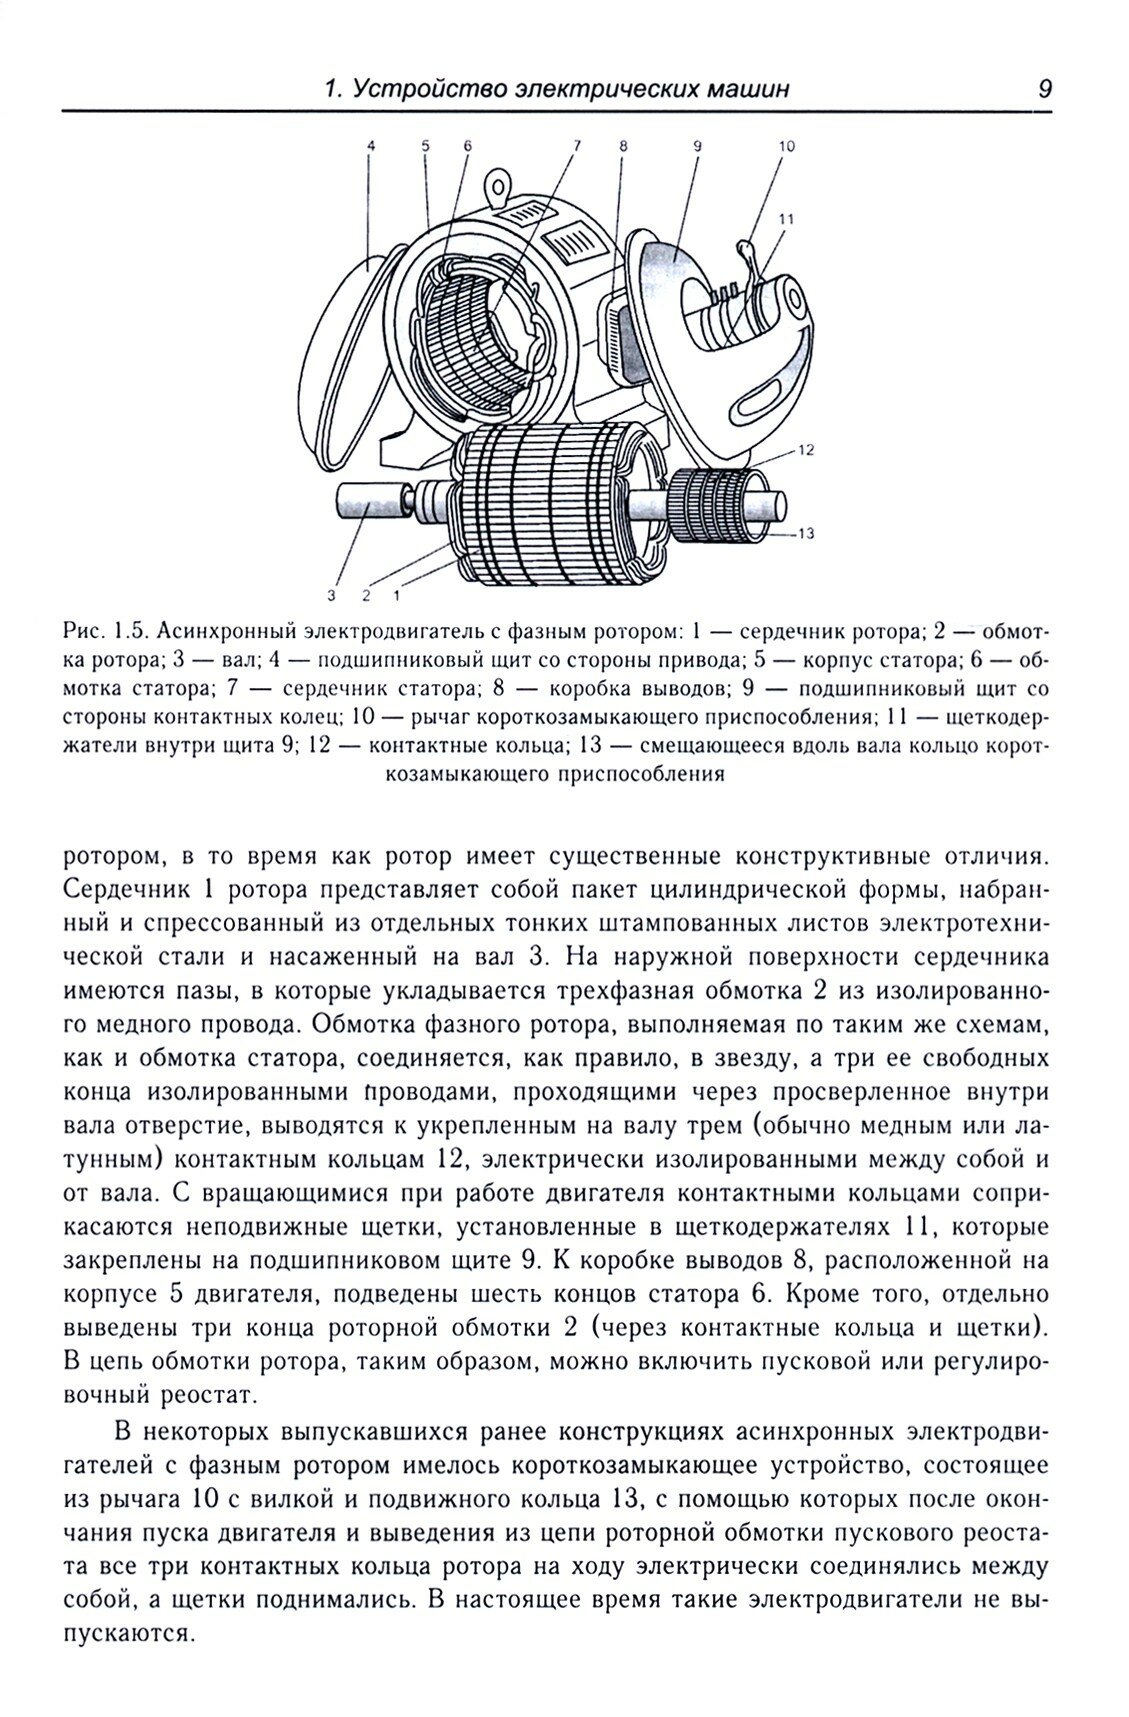 Справочник обмотчика асинхронных электродвигателей - фото №3